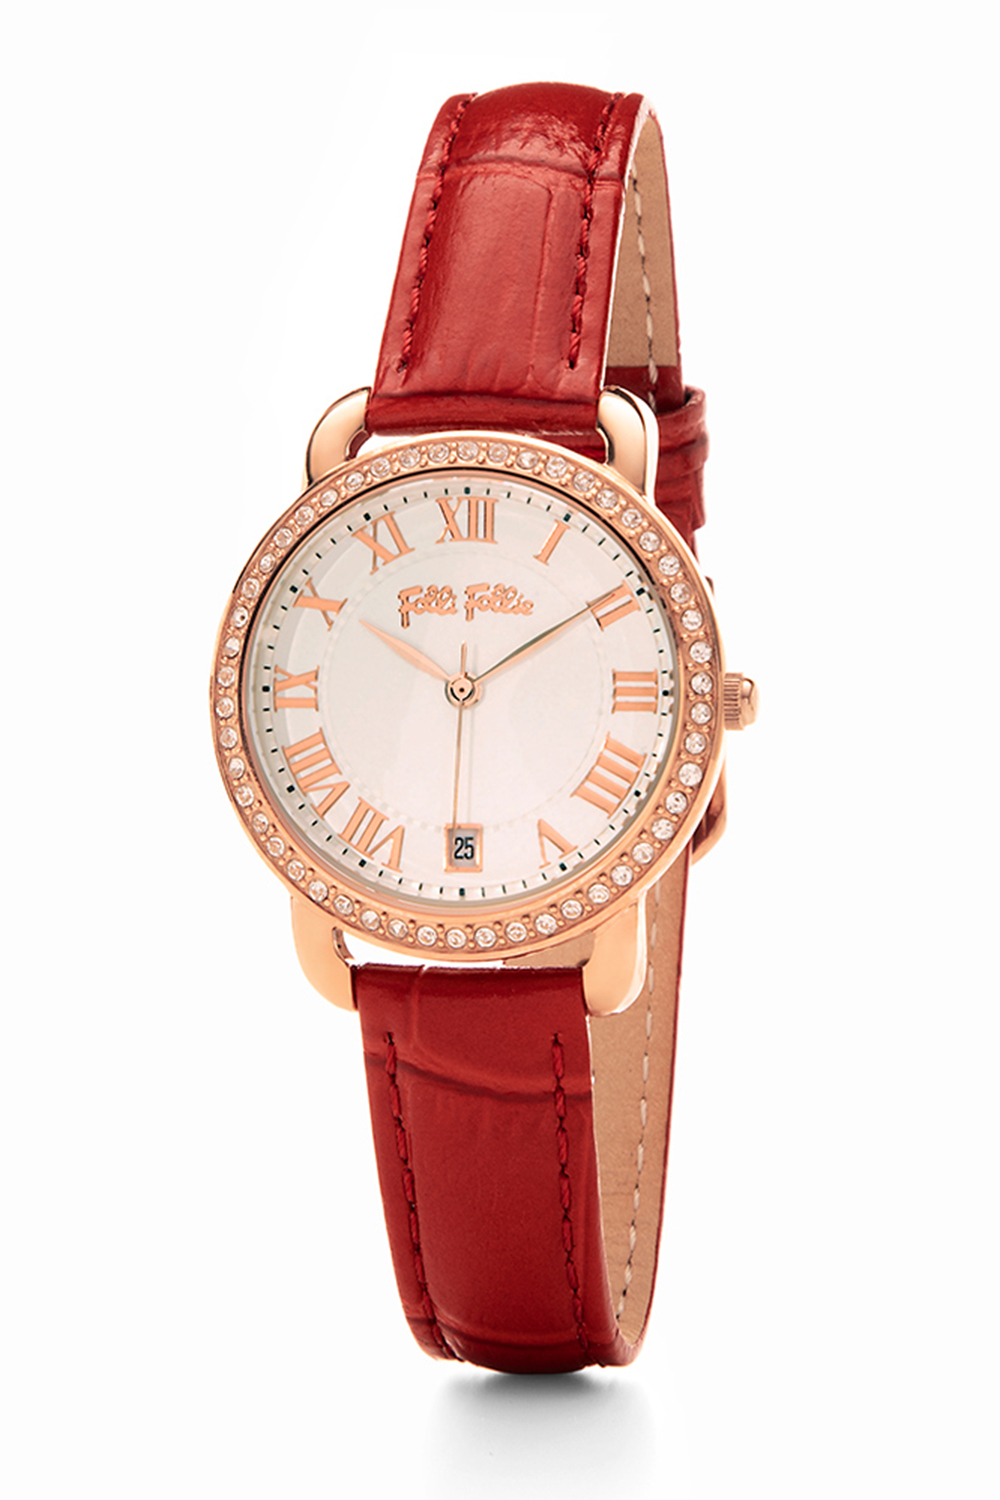 FOLLI FOLLIE – Γυναικείο ρολόι με δερμάτινο λουράκι FOLLI FOLLIE PERFECT MATCH κόκκινο WF19B023SDW-RE